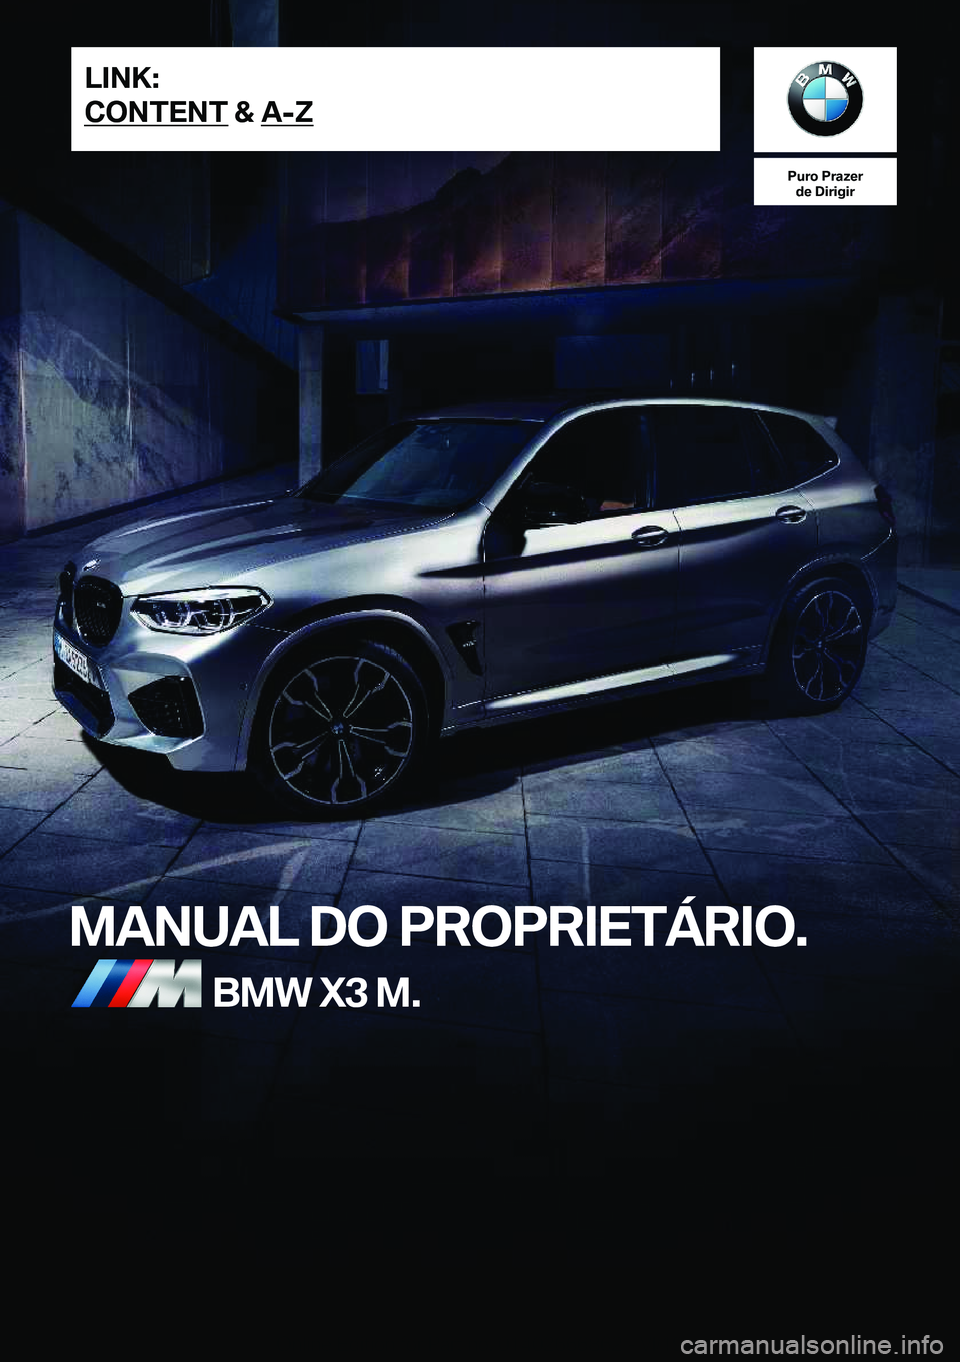 BMW X3 M 2020  Manual do condutor (in Portuguese) �P�u�r�o��P�r�a�z�e�r�d�e��D�i�r�i�g�i�r
�M�A�N�U�A�L��D�O��P�R�O�P�R�I�E�T�Á�R�I�O�.�B�M�W��X�3��M�.�L�I�N�K�:
�C�O�N�T�E�N�T��&��A�-�Z�O�n�l�i�n�e��E�d�i�t�i�o�n��f�o�r��P�a�r�t��n�o�.�